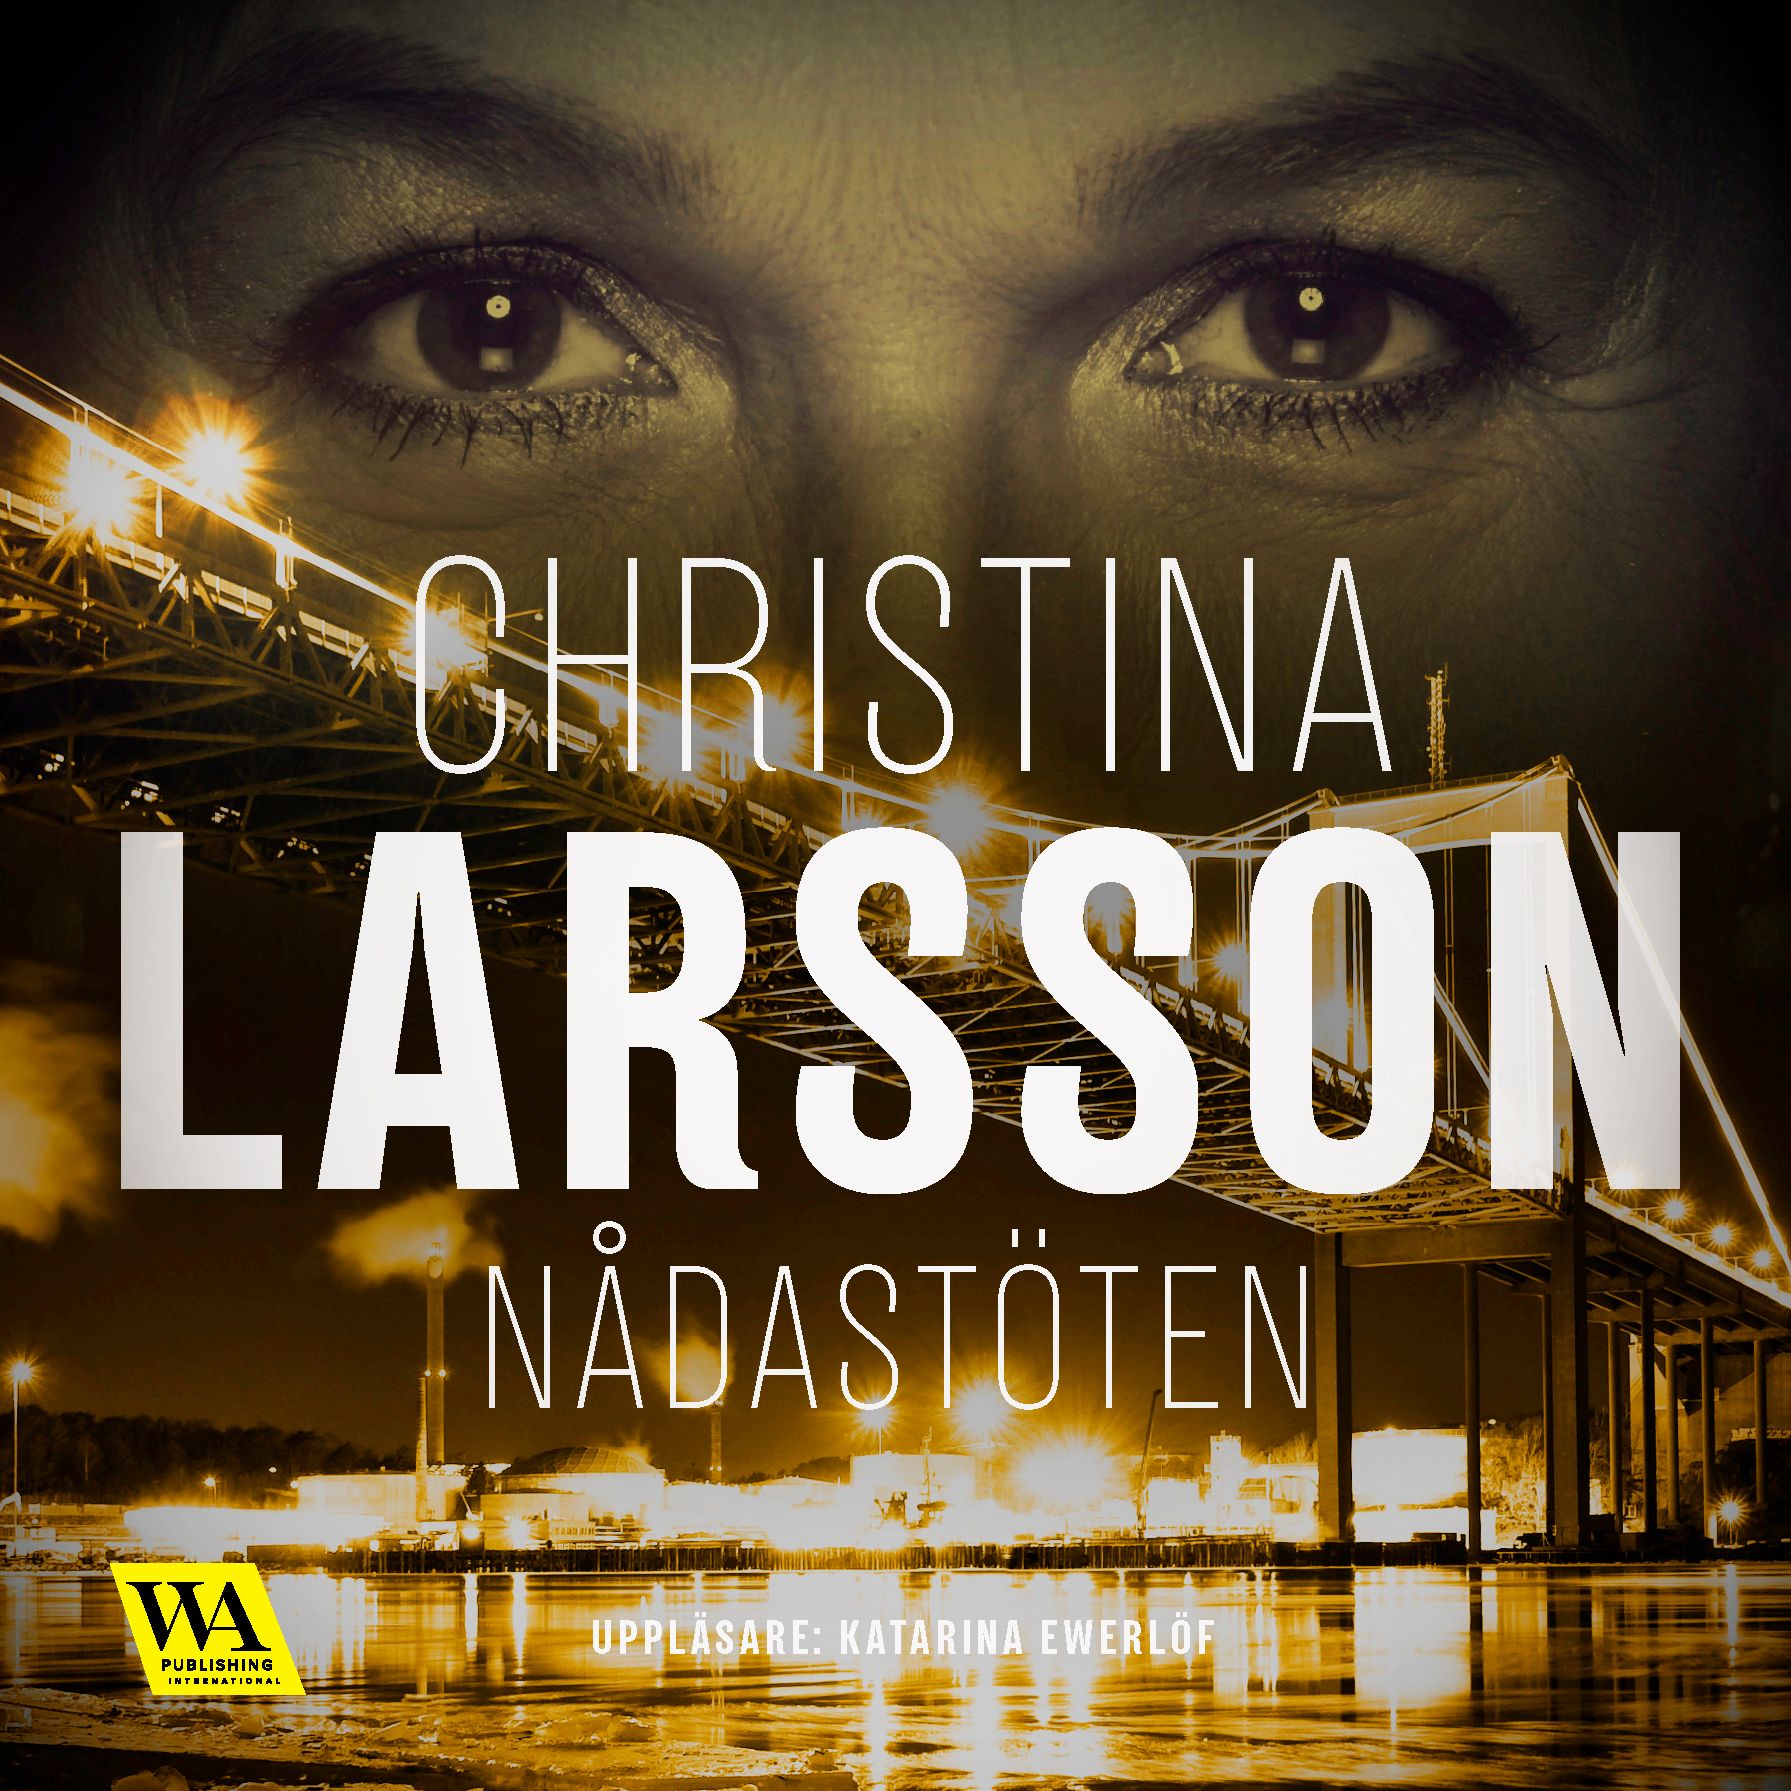 Nådastöten, ljudbok av Christina Larsson